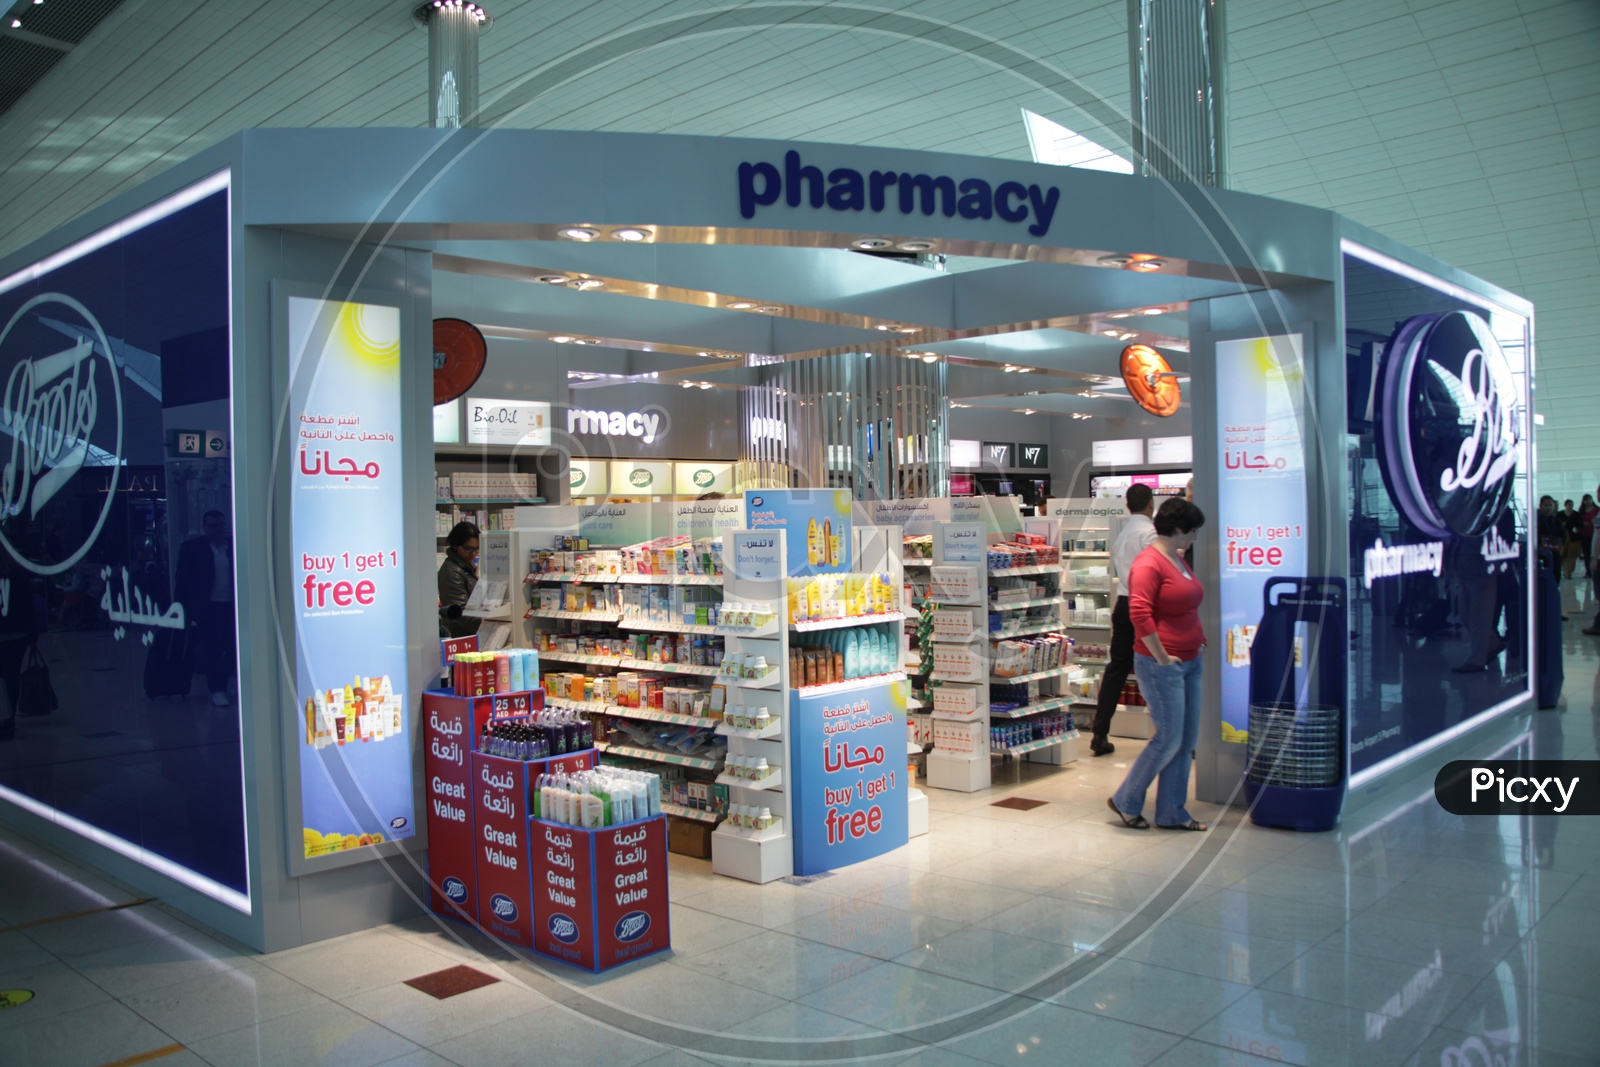 Pharmacy store in Dubai Airport